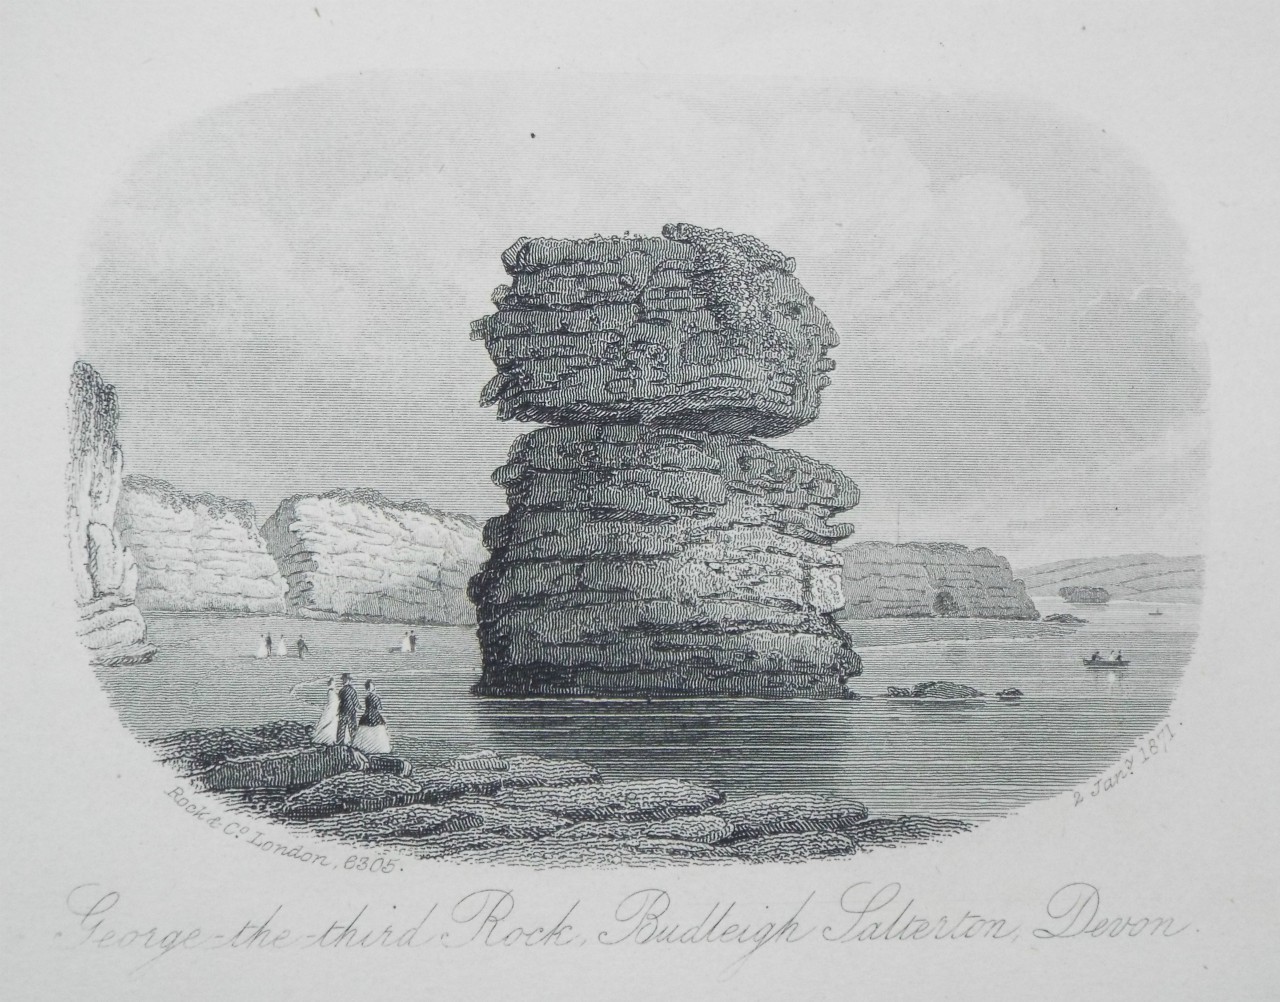 Steel Vignette - George the Third Rock, Budleigh Salterton, Devon. - Rock